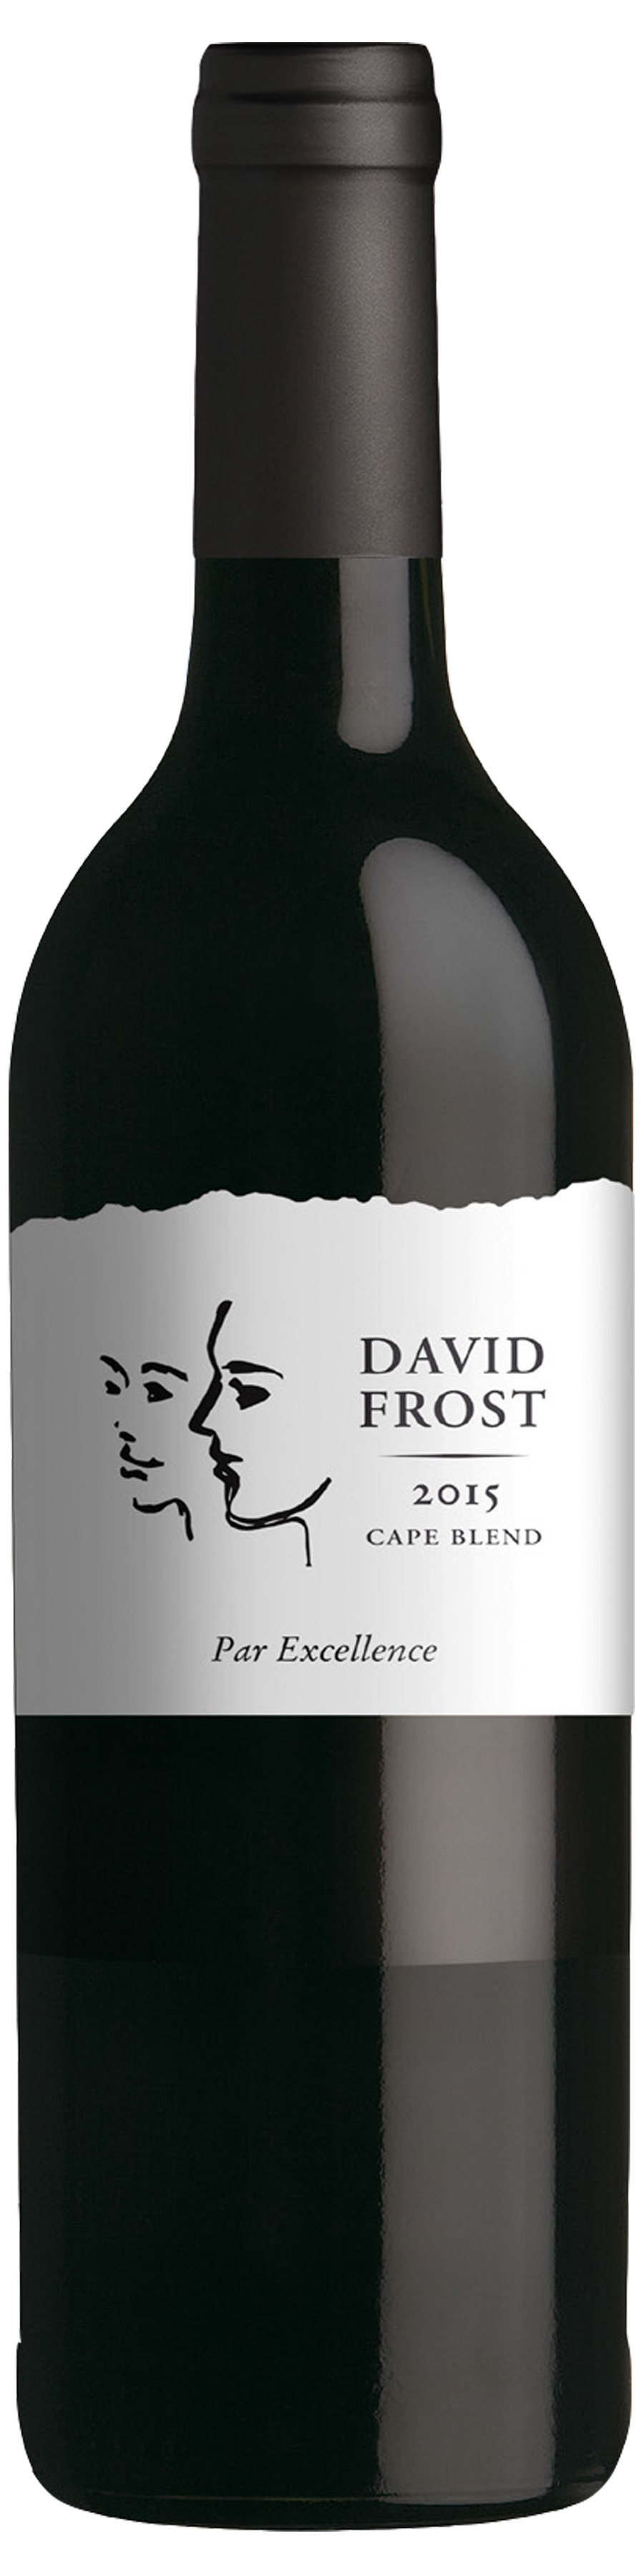 2015 David Frost Par Excellence Cape Blend Magnum - click image for full description